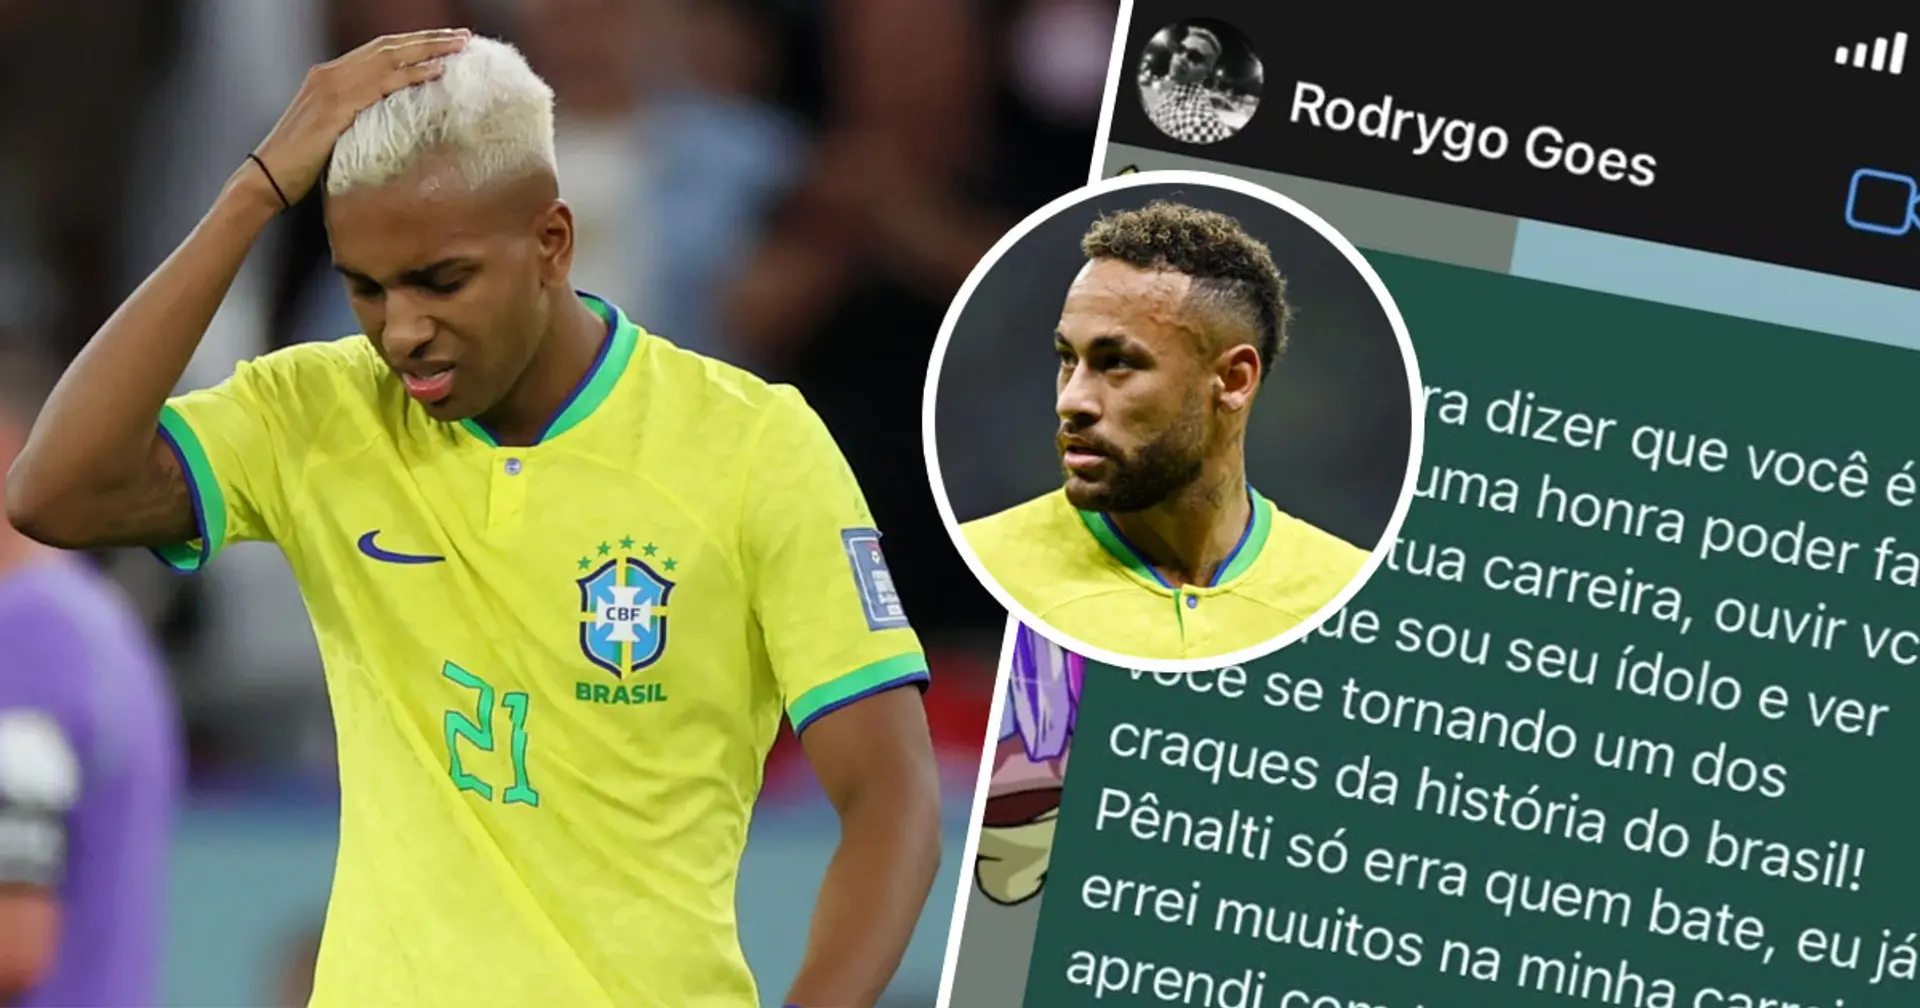 "Les critiques te rendront plus fort": Neymar révèle son message pour Rodrygo après le penalty crucial du jeune contre la Croatie